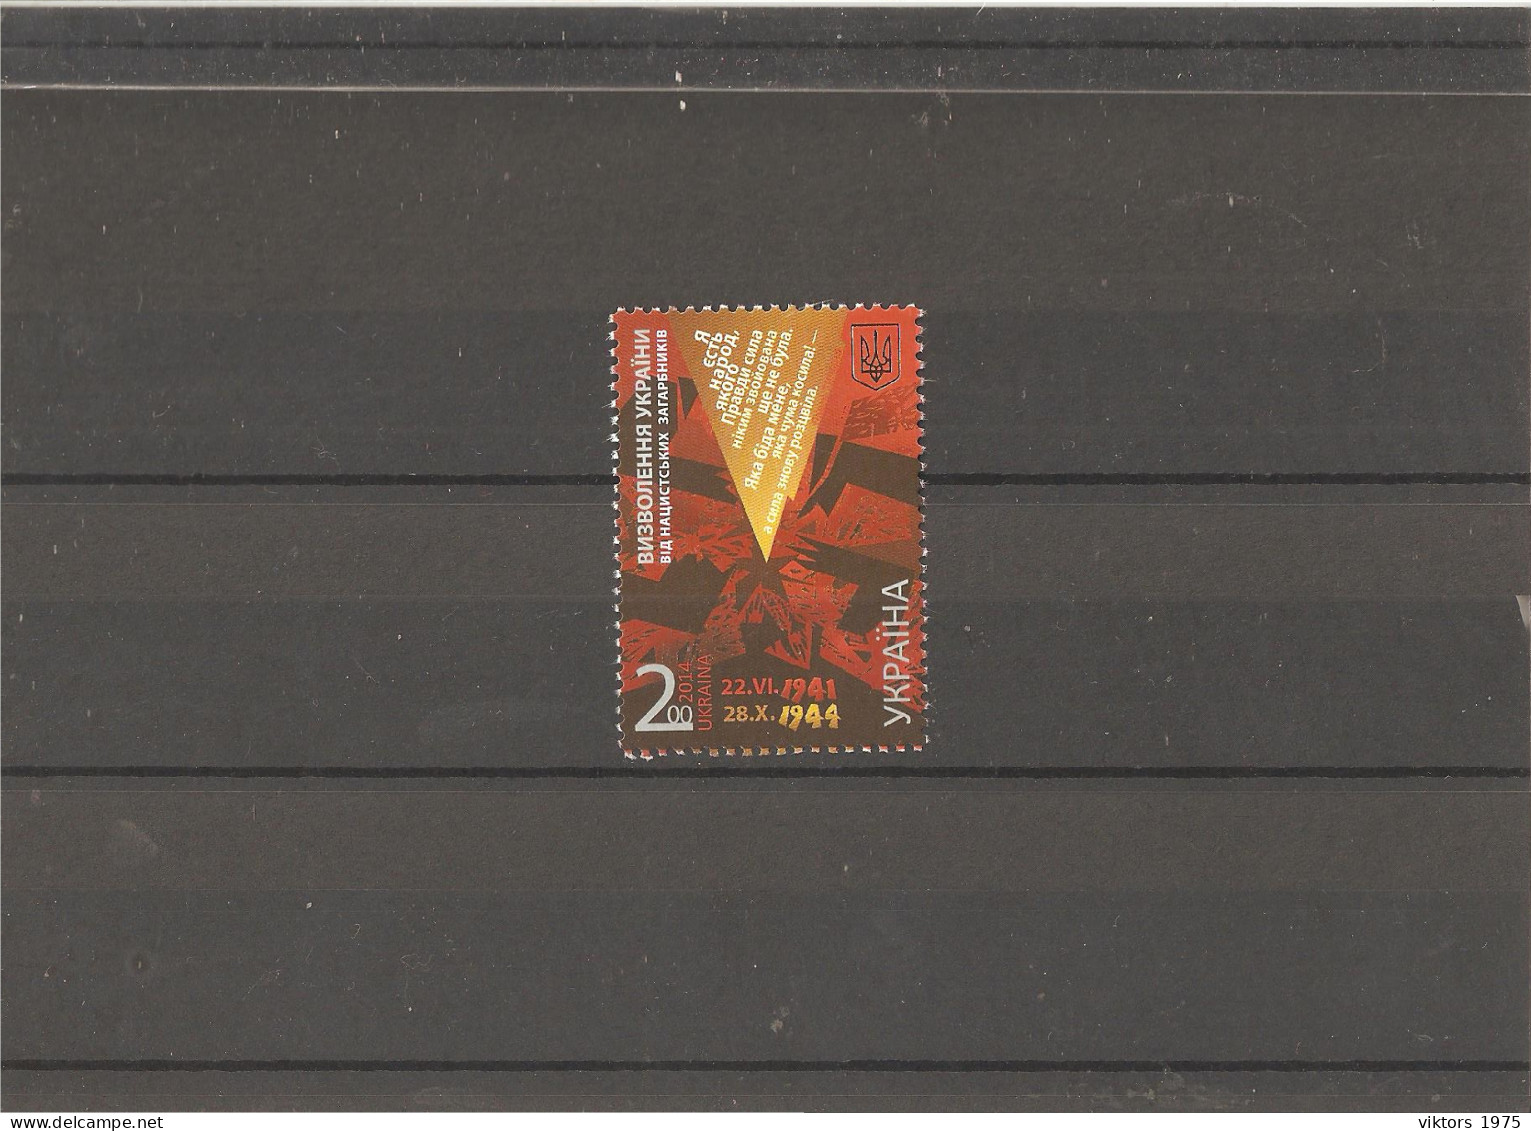 MNH Stamp Nr.1447  In MICHEL Catalog - Ukraine